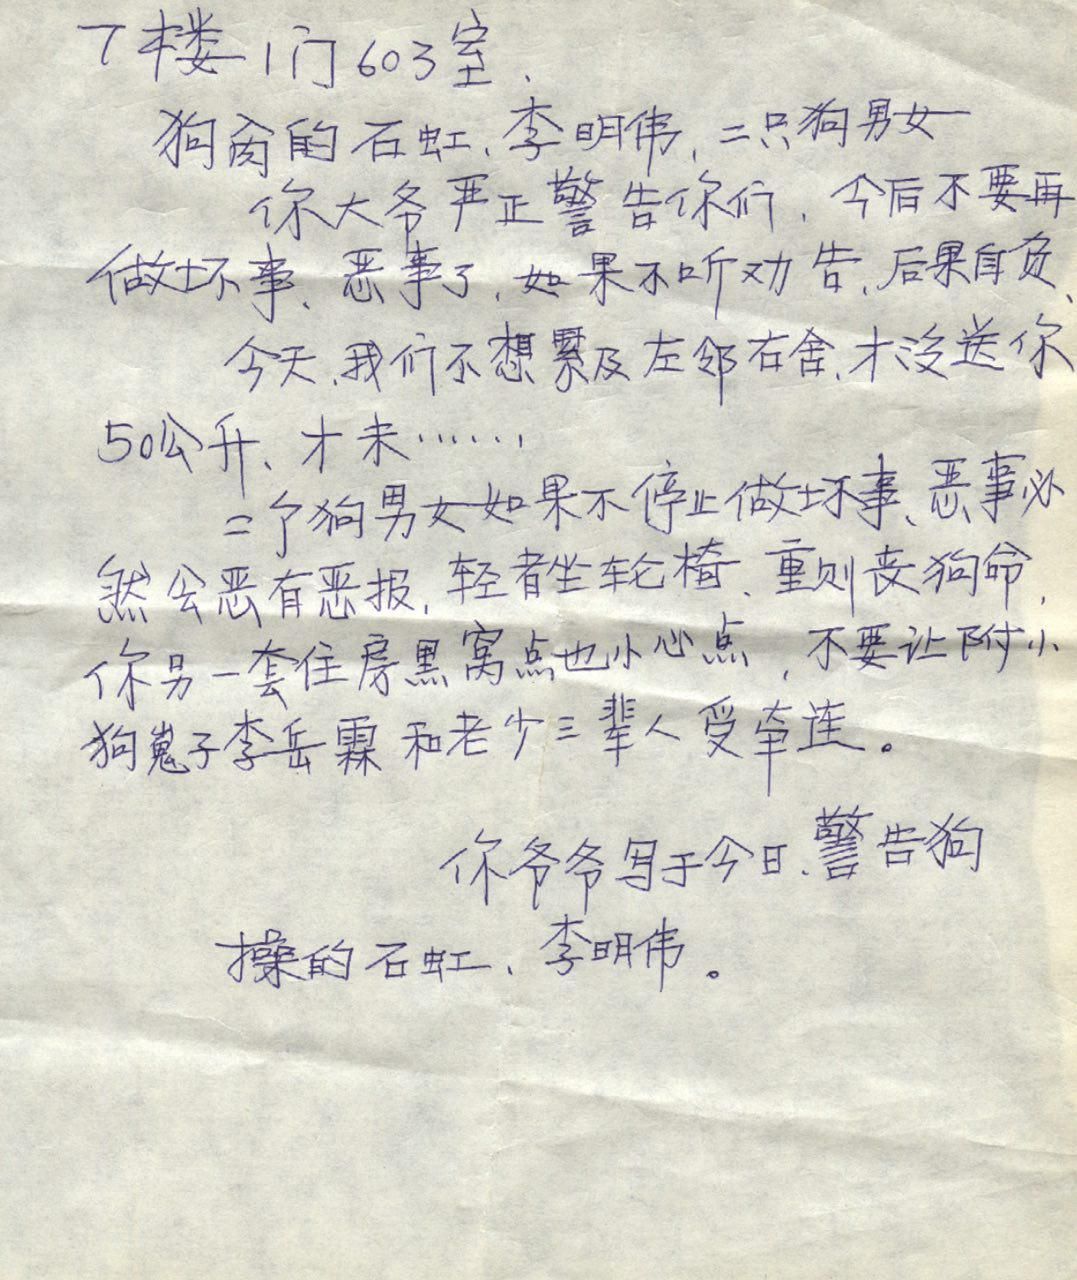 1名中国公民和博士给中华人民共和国领导人的公开信